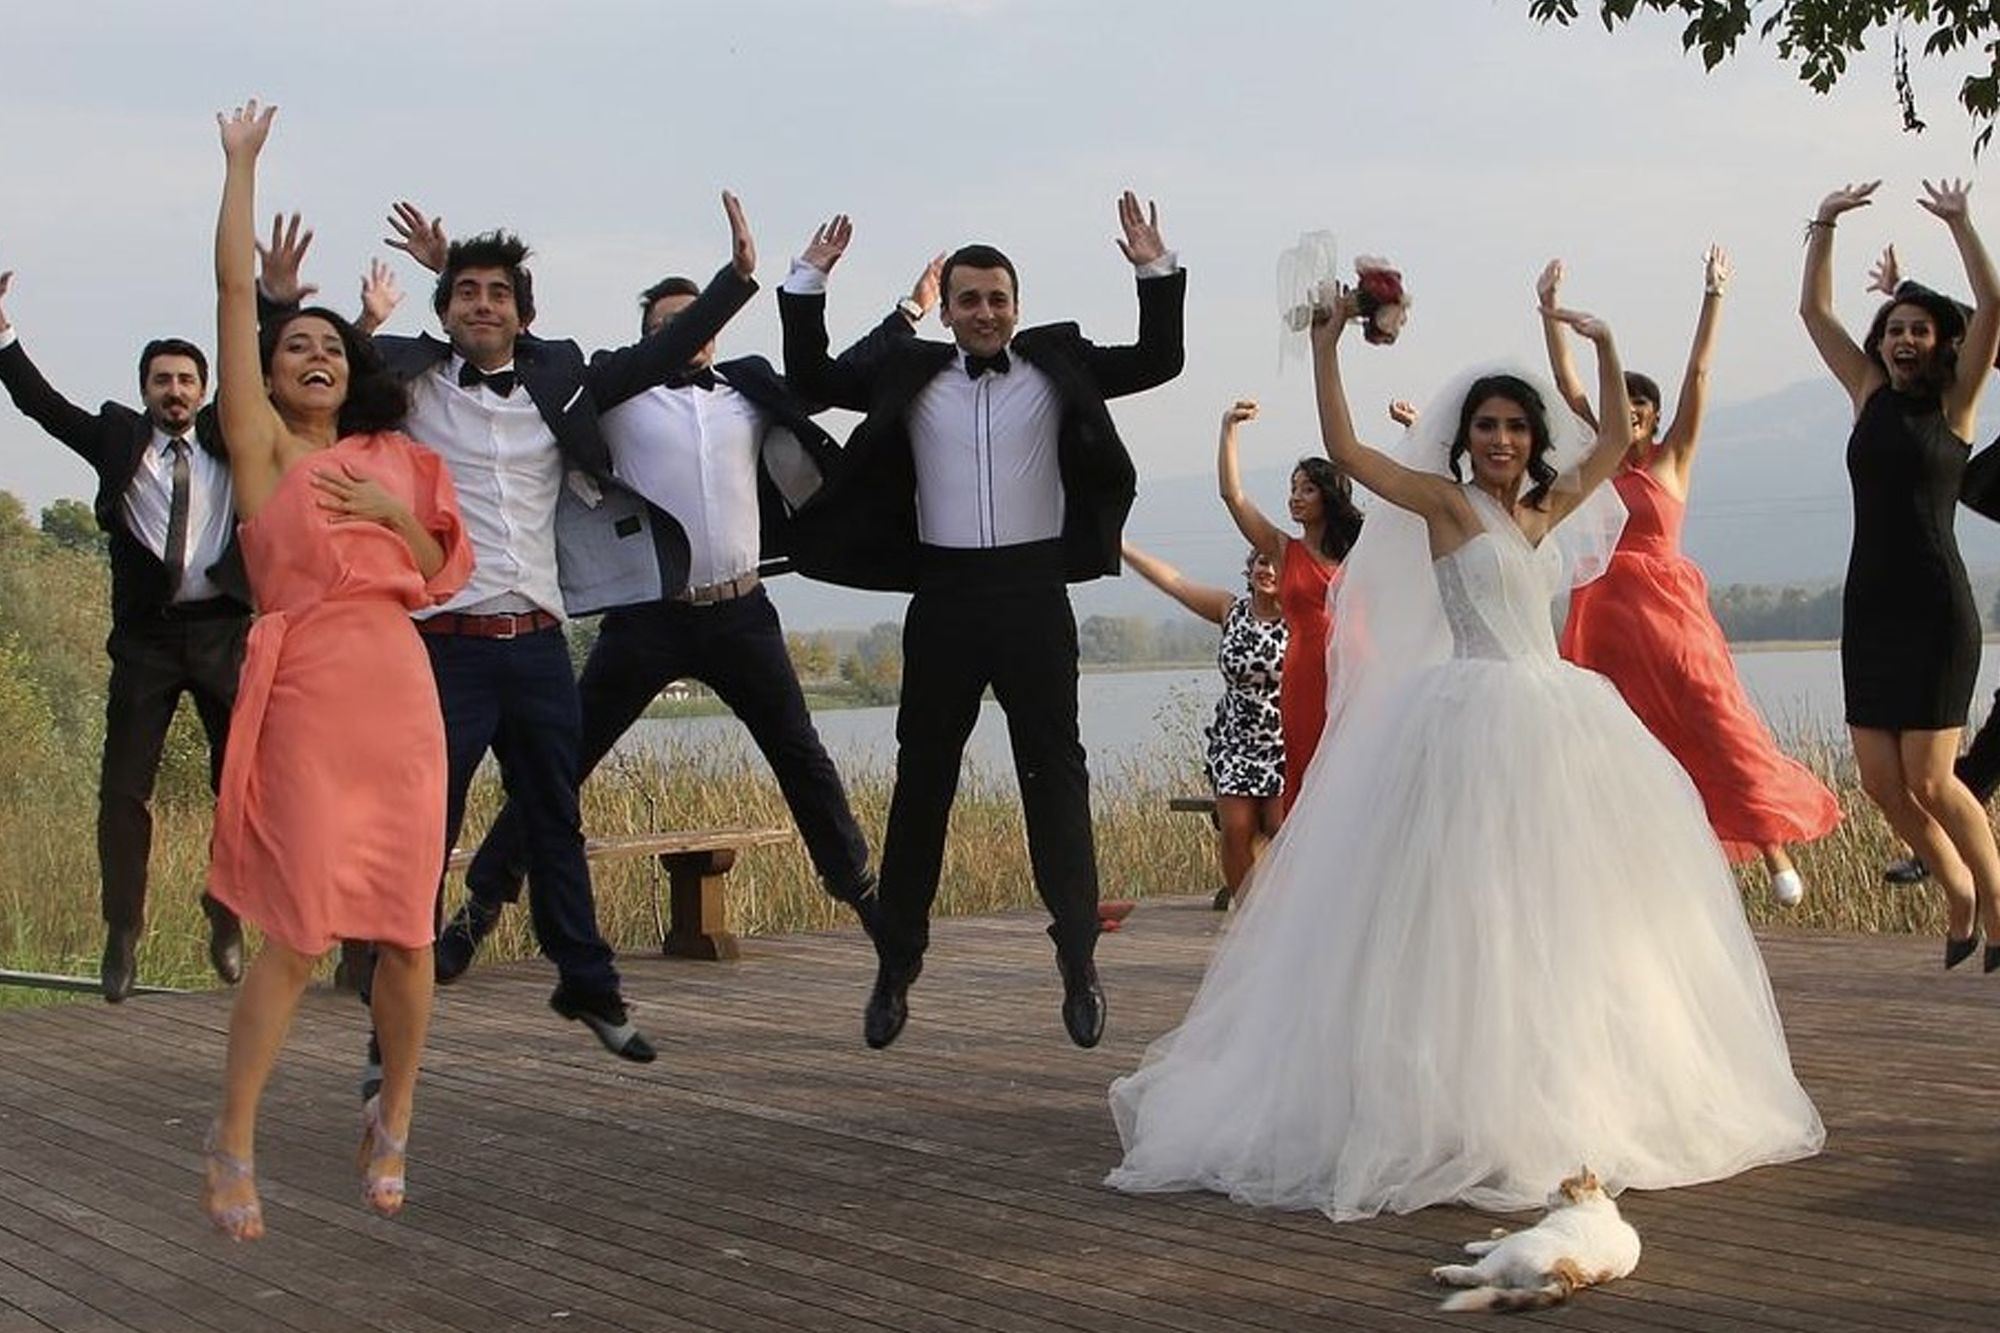 Idee per un flash mob matrimonio sorprendente e memorabile!